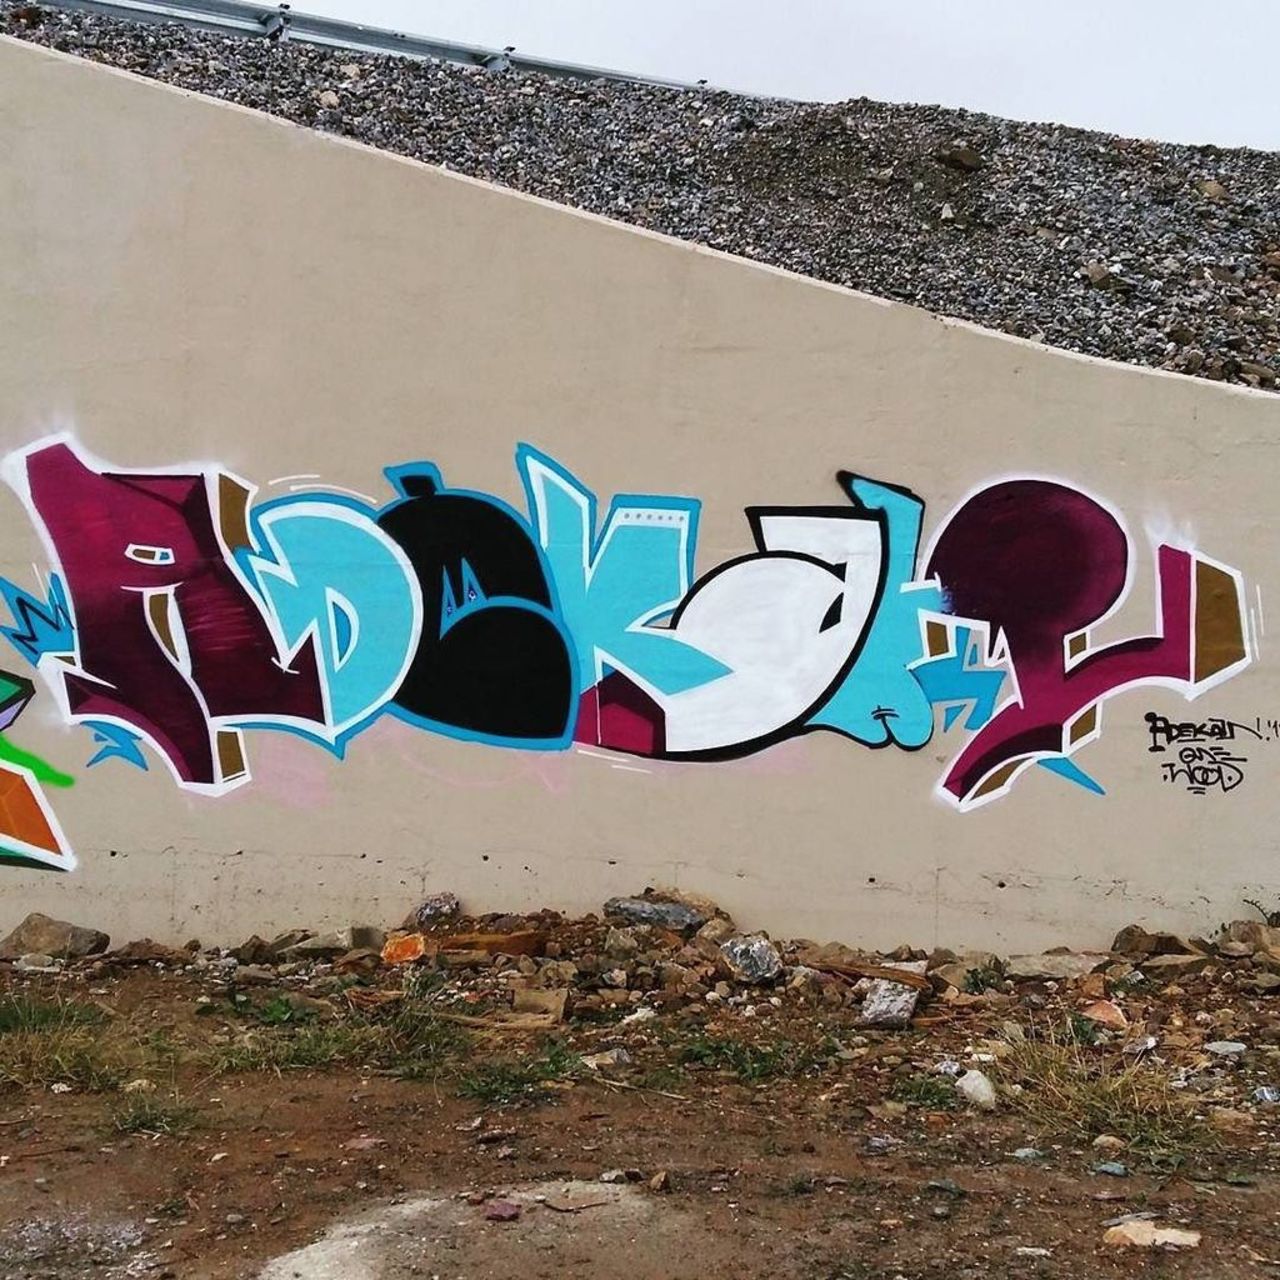 Work by @adekan1  @dsb_graff #dsb_graff @rsa_graffiti @streetawesome #streetart #urbanart #graffitiart #graffiti #… https://t.co/1OGXtPpguO